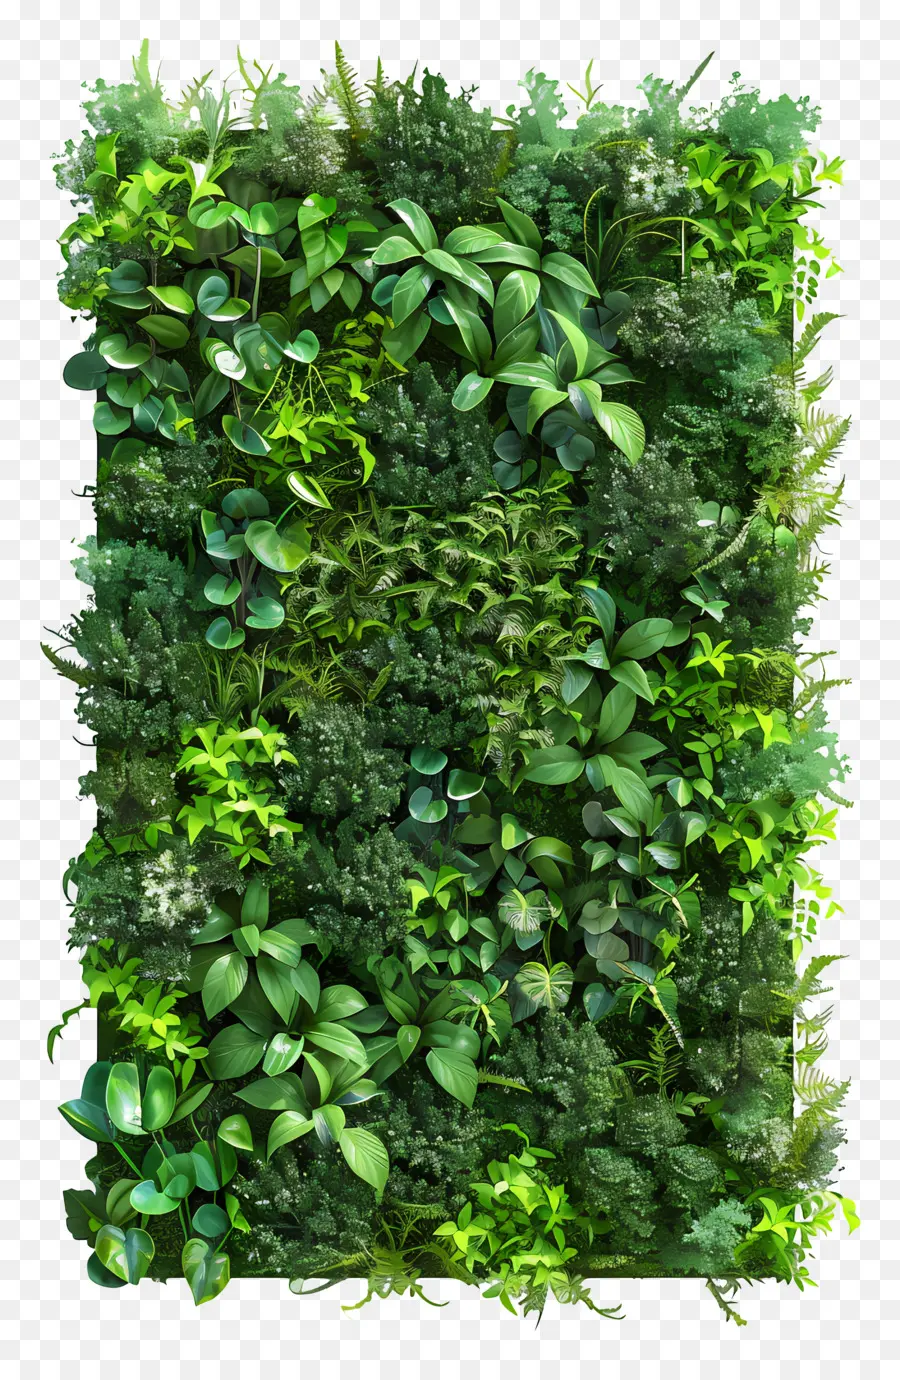 Parete verde - Muro di pianta verde lussureggiante con varietà